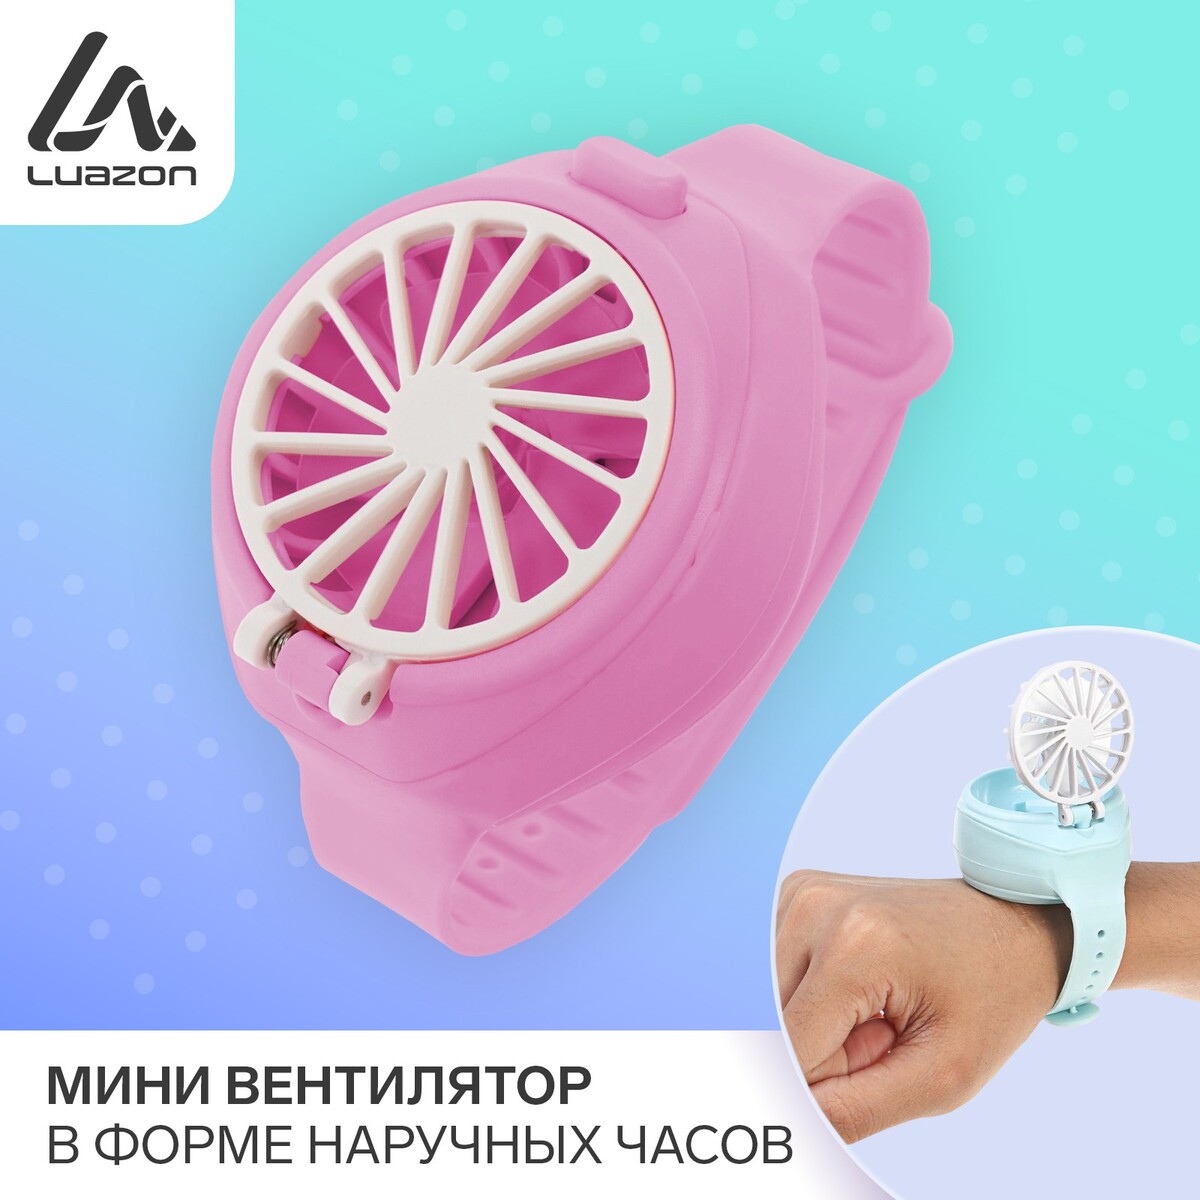 Мини вентилятор в форме наручных часов lof-10, 3 скорости, поворотный, розовый atemi мини степпер поворотный с поручнями as1520